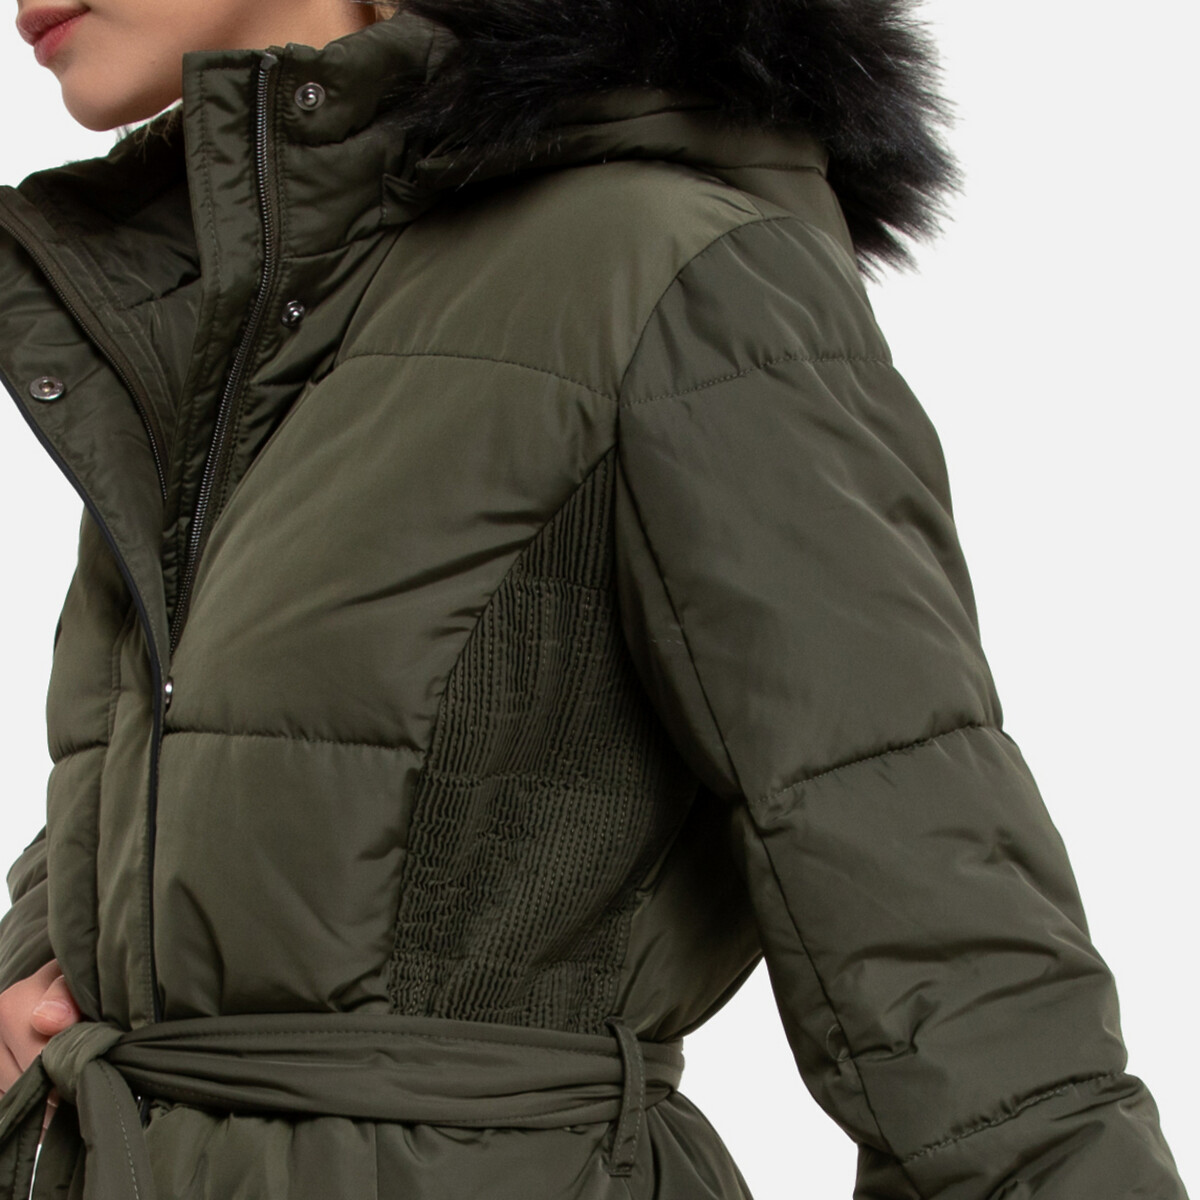 Куртка LaRedoute Стеганая средней длины с капюшоном зимняя модель 40 (FR) - 46 (RUS) зеленый, размер 40 (FR) - 46 (RUS) Стеганая средней длины с капюшоном зимняя модель 40 (FR) - 46 (RUS) зеленый - фото 3